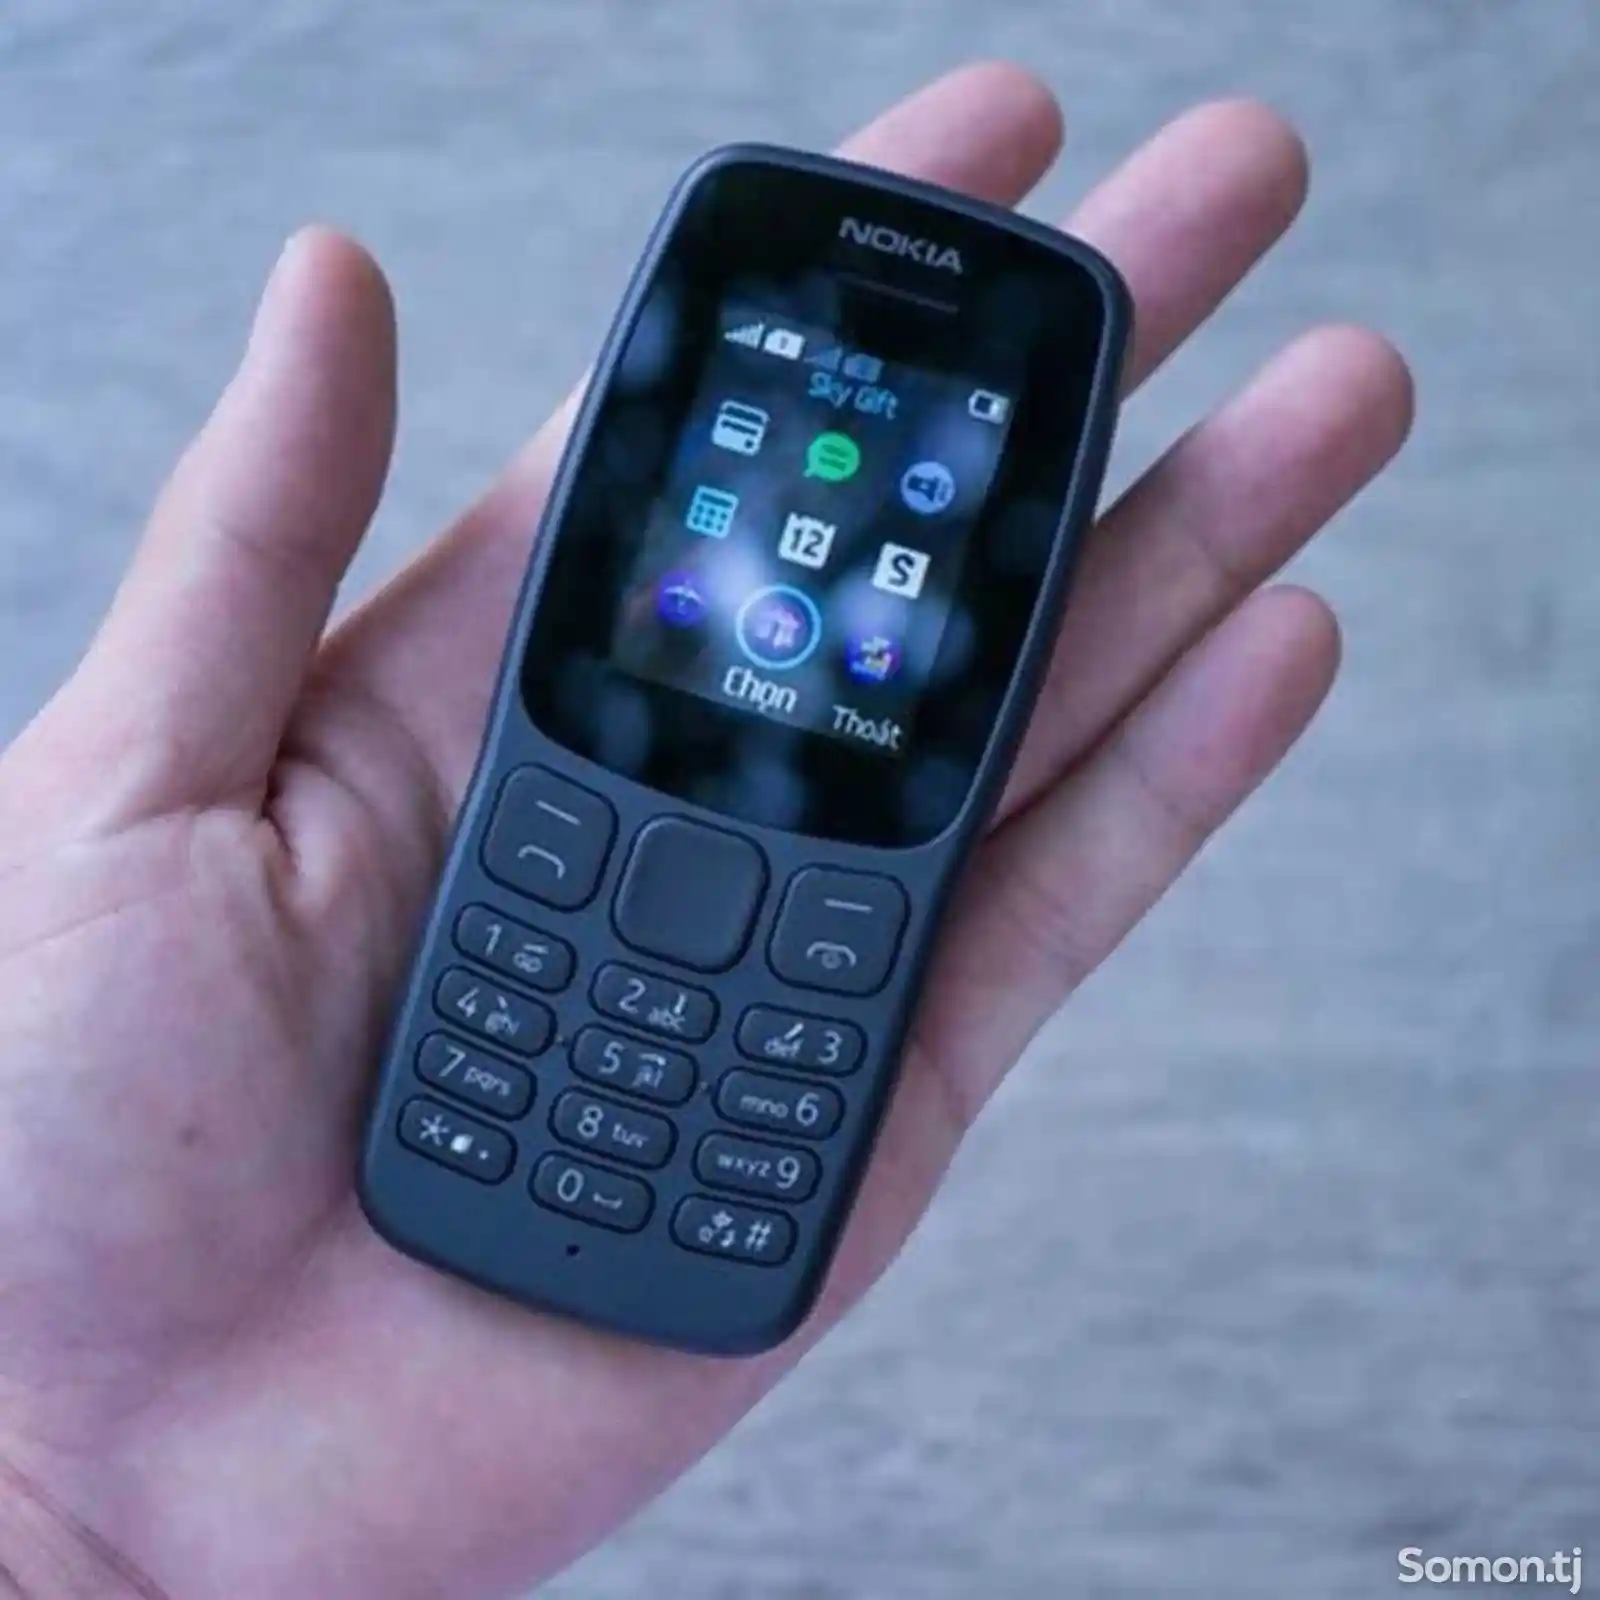 Nokia 106-4